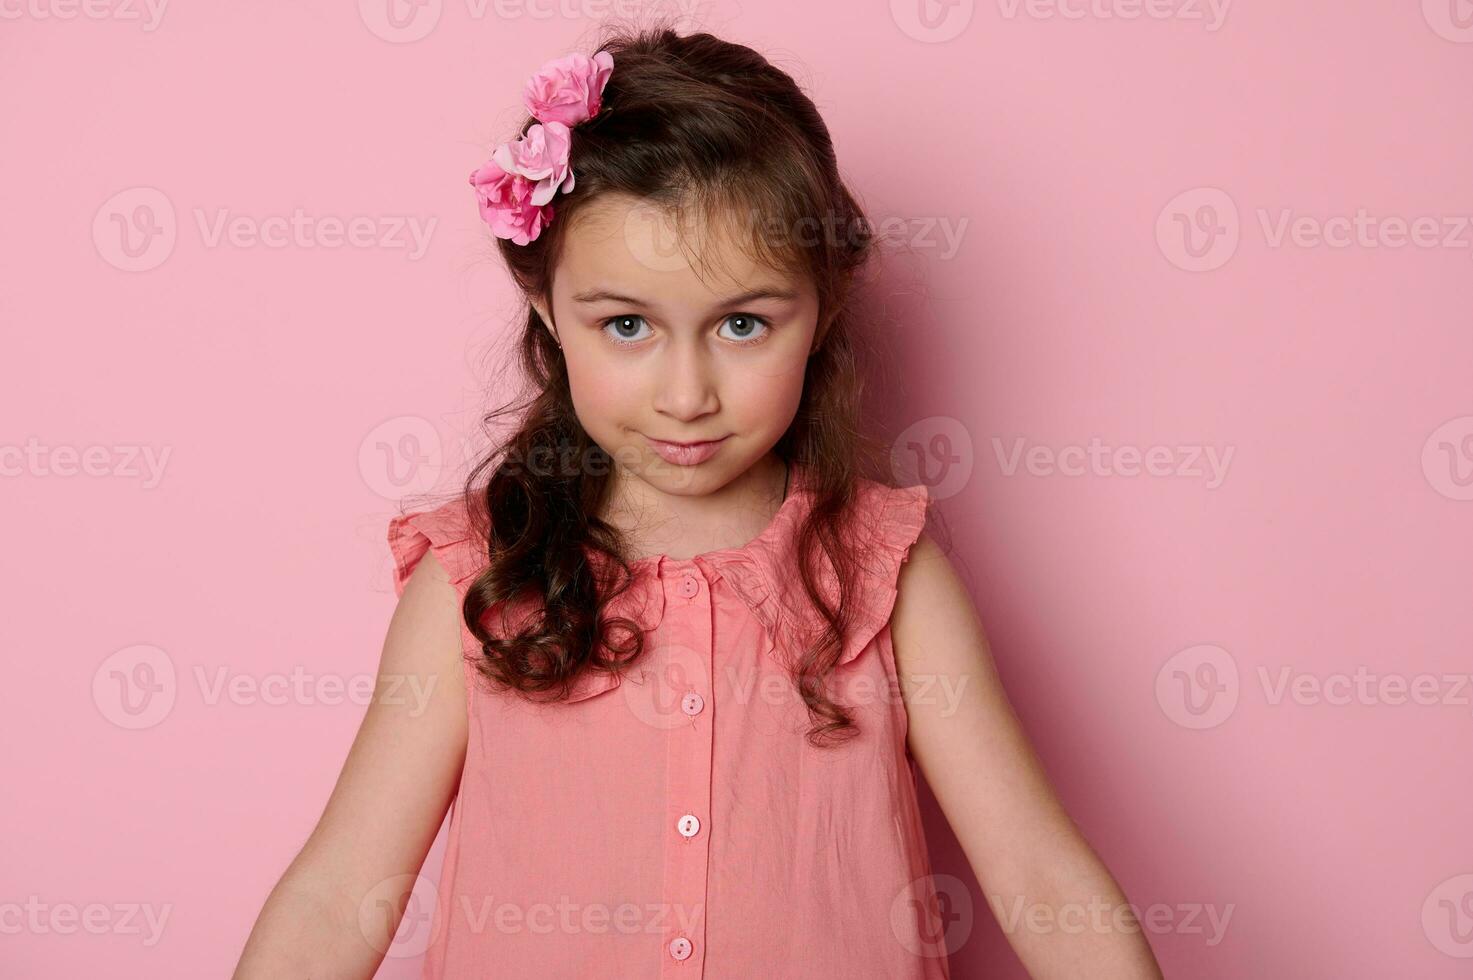 caucásico pequeño niña 6 6 años viejo, con azul ojos y elegante peinado,  vestido en elegante rosado vestir mirando a cámara 25912492 Foto de stock  en Vecteezy